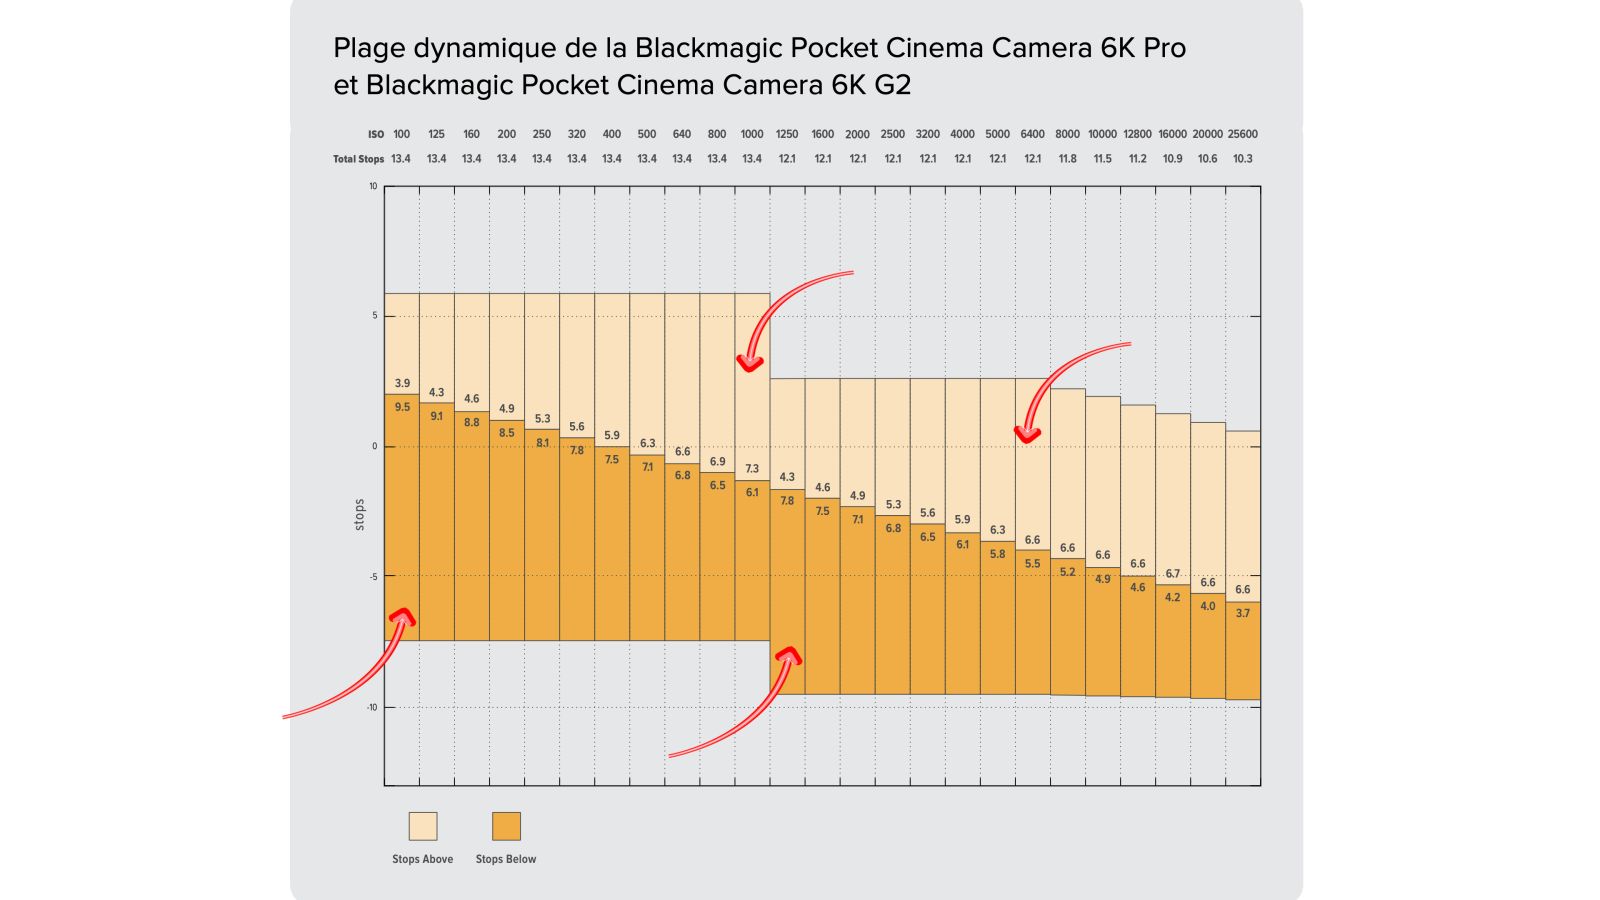 Plage dynamique de la Blackmagic Pocket Cinema Camera 6K Pro et 6K G2